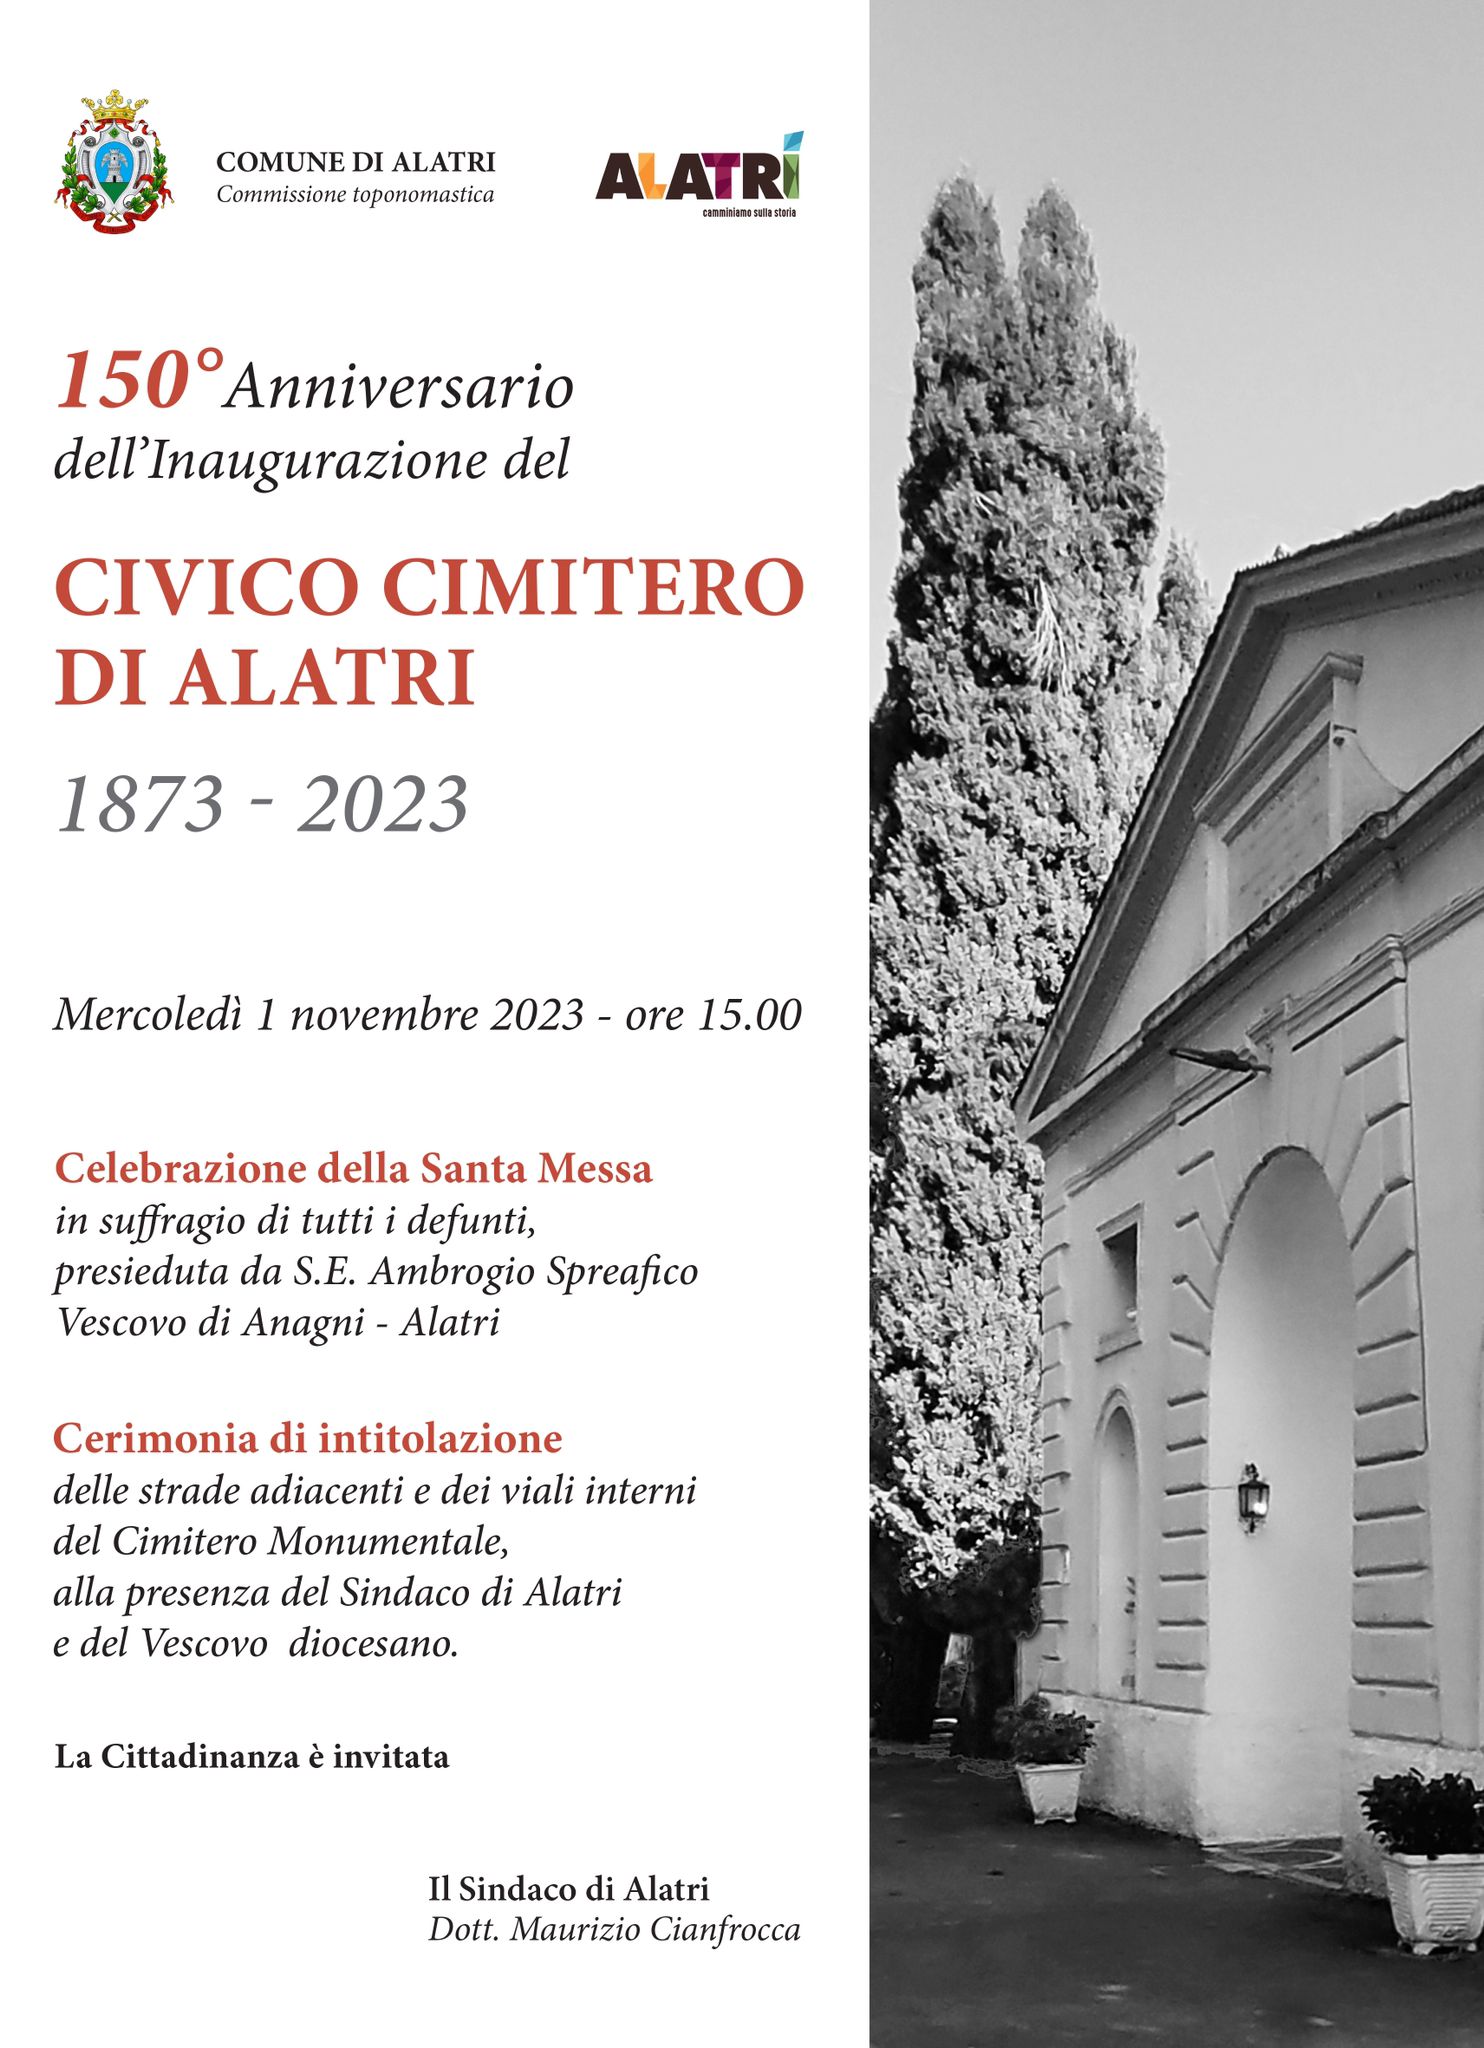 150° Anniversario dell' Inaugurazione del Civico Cimitero di Alatri